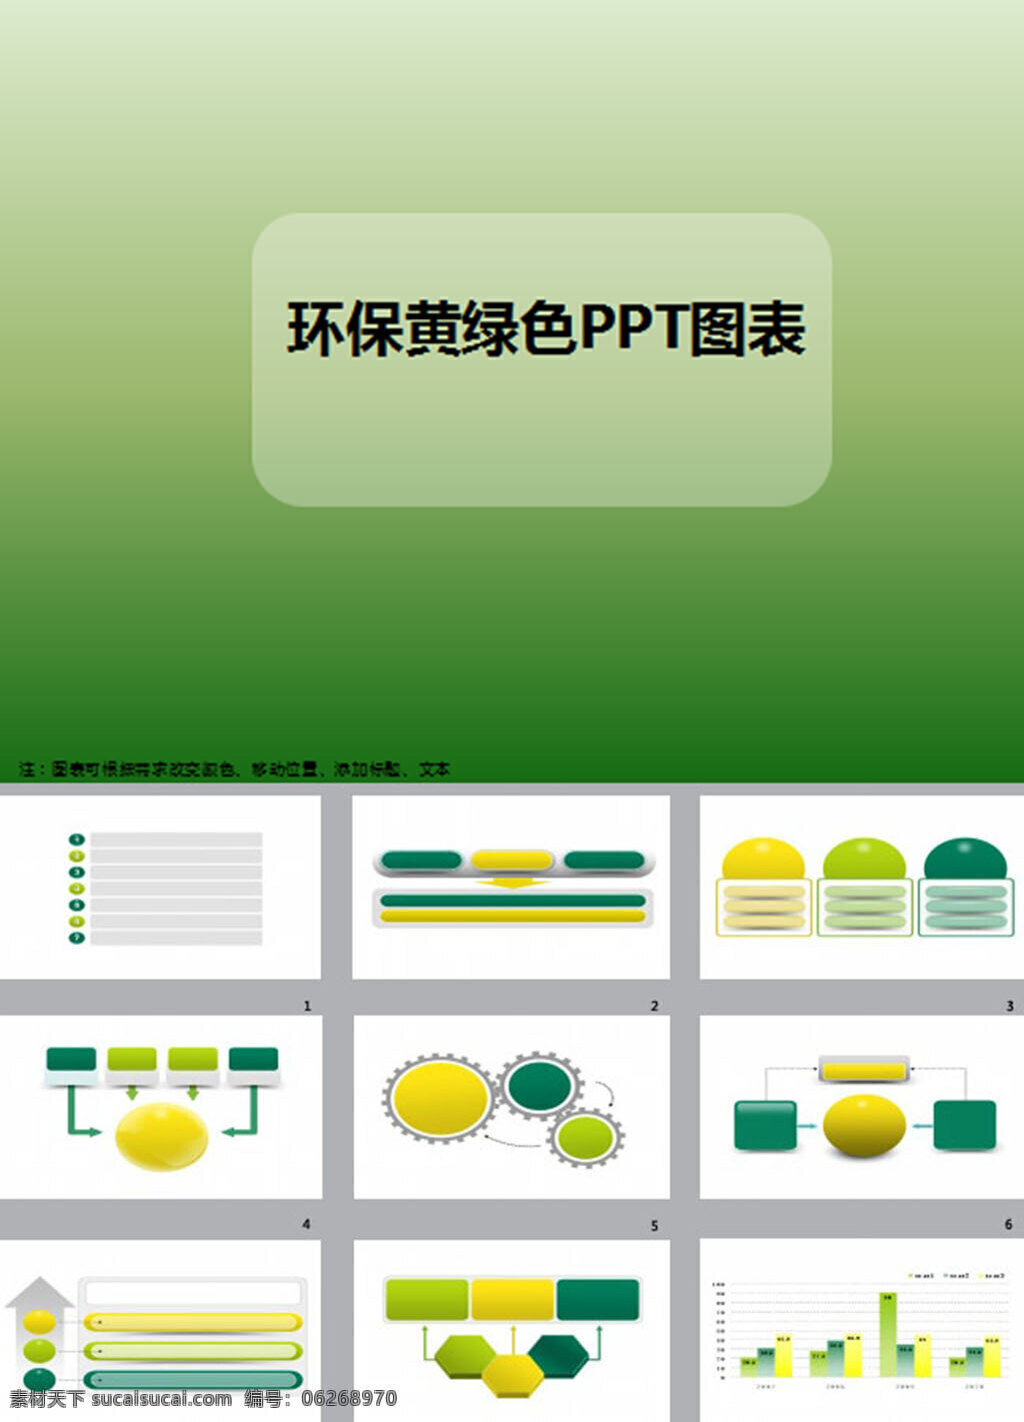 环保 箭头 数据 图表 黄绿色 ppt图表 背景 幻灯片 模板 模板下载 商务ppt pptx 白色